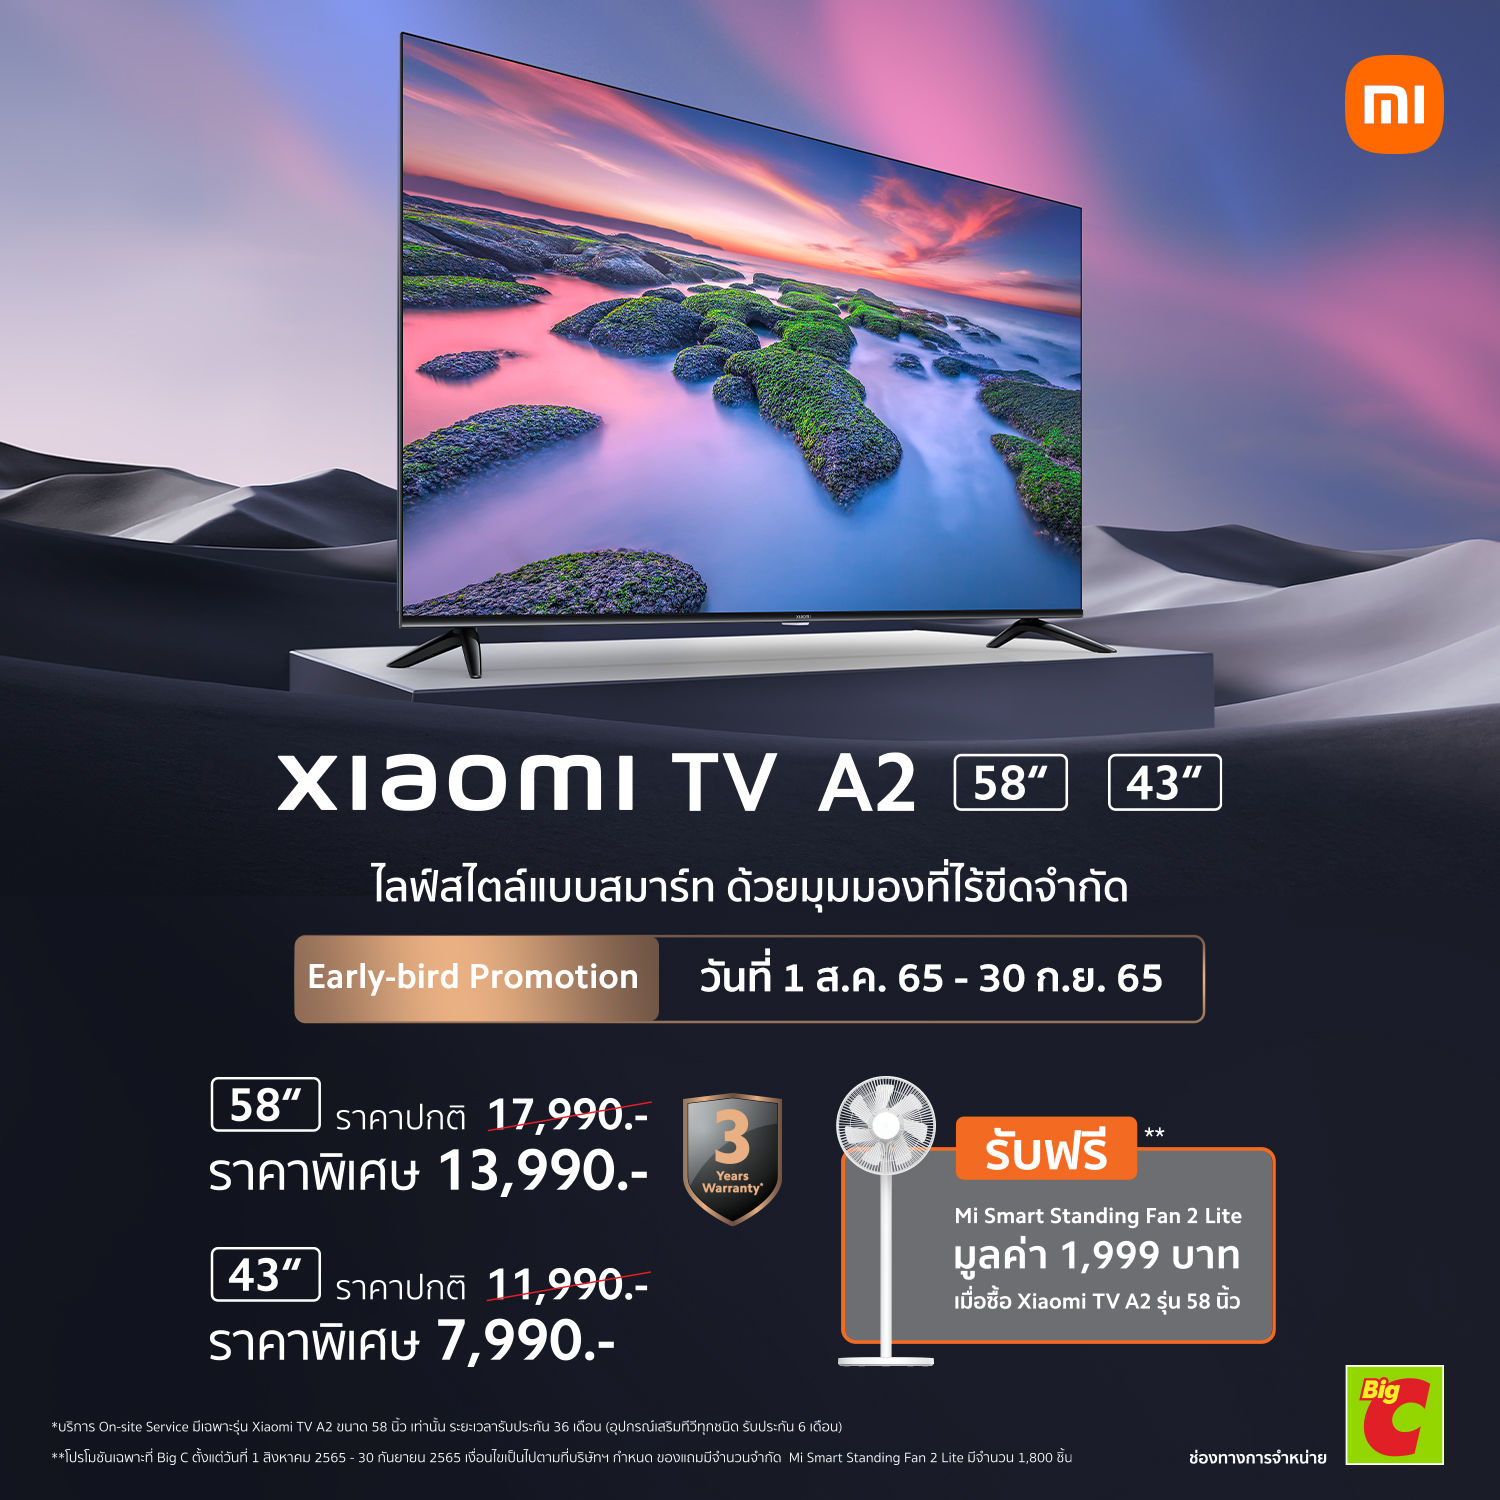 เสียวหมี่วางจำหน่ายทีวีอัจฉริยะ Xiaomi TV A2 43 และ Xiaomi TV A2 58 คอนเซ็ปต์ Smart life, limitless vision พิเศษ 11,990 บาท